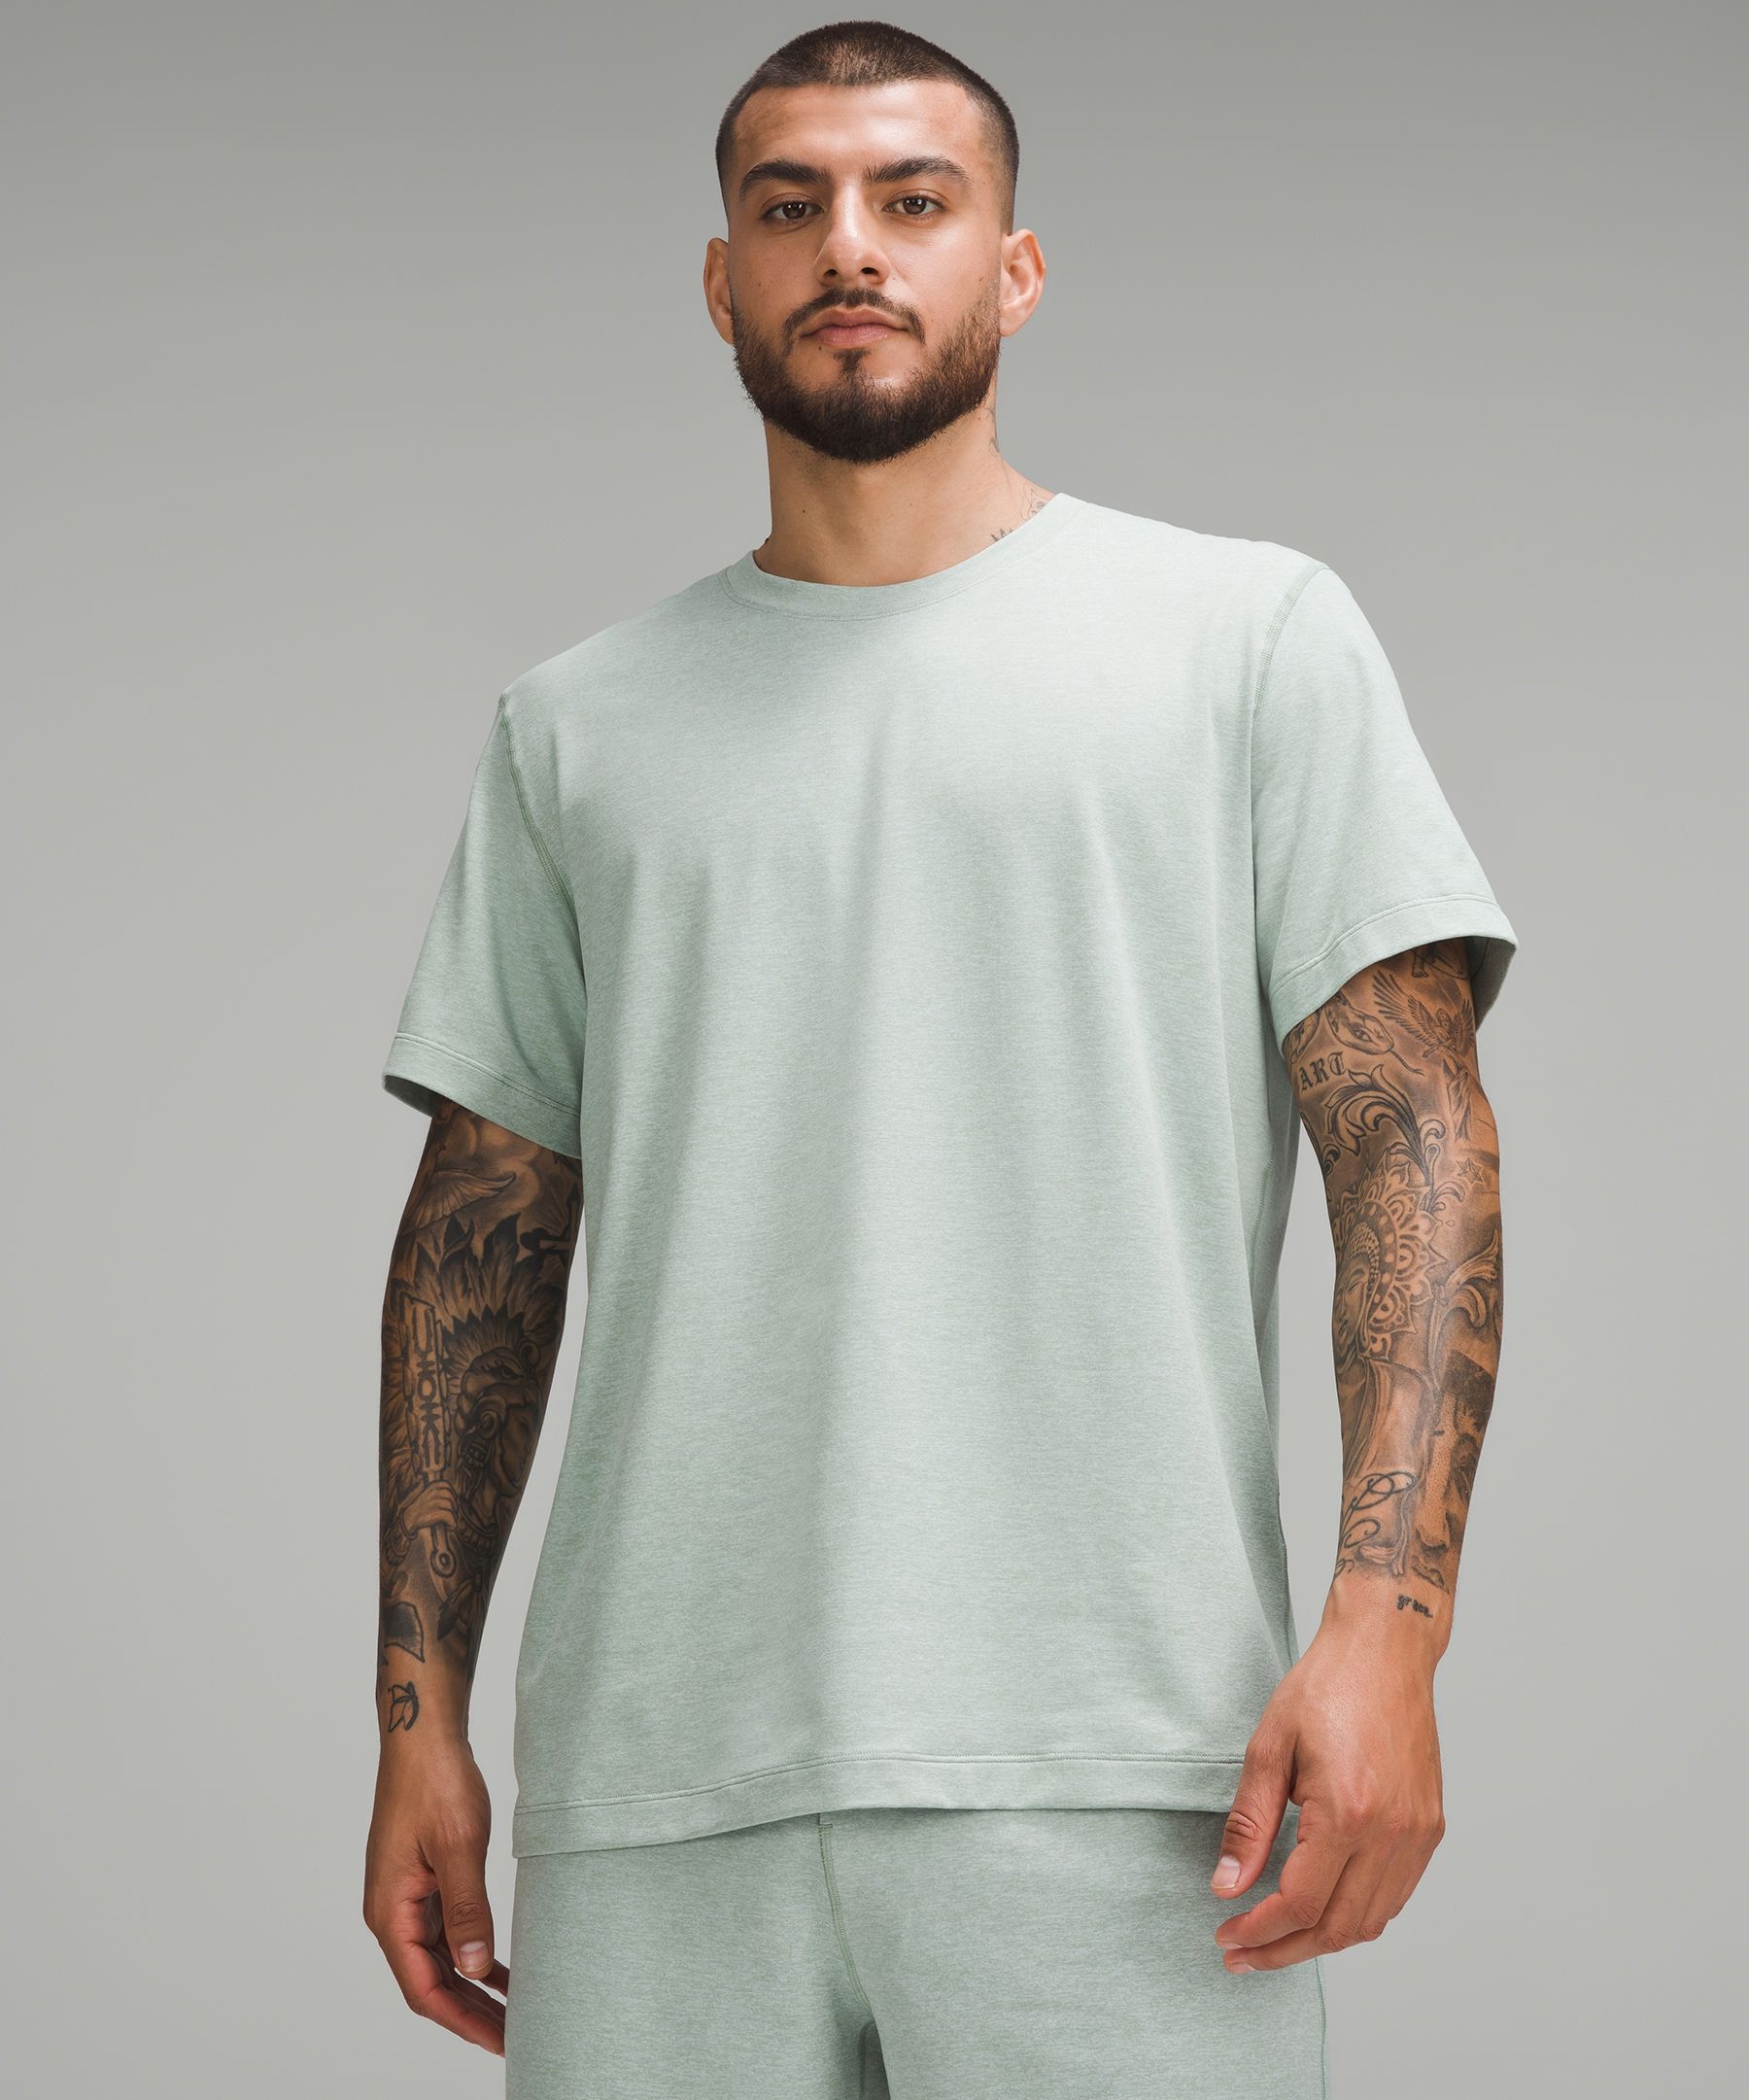 Shop Lululemon Soft Jersey Short-sleeve Shirt